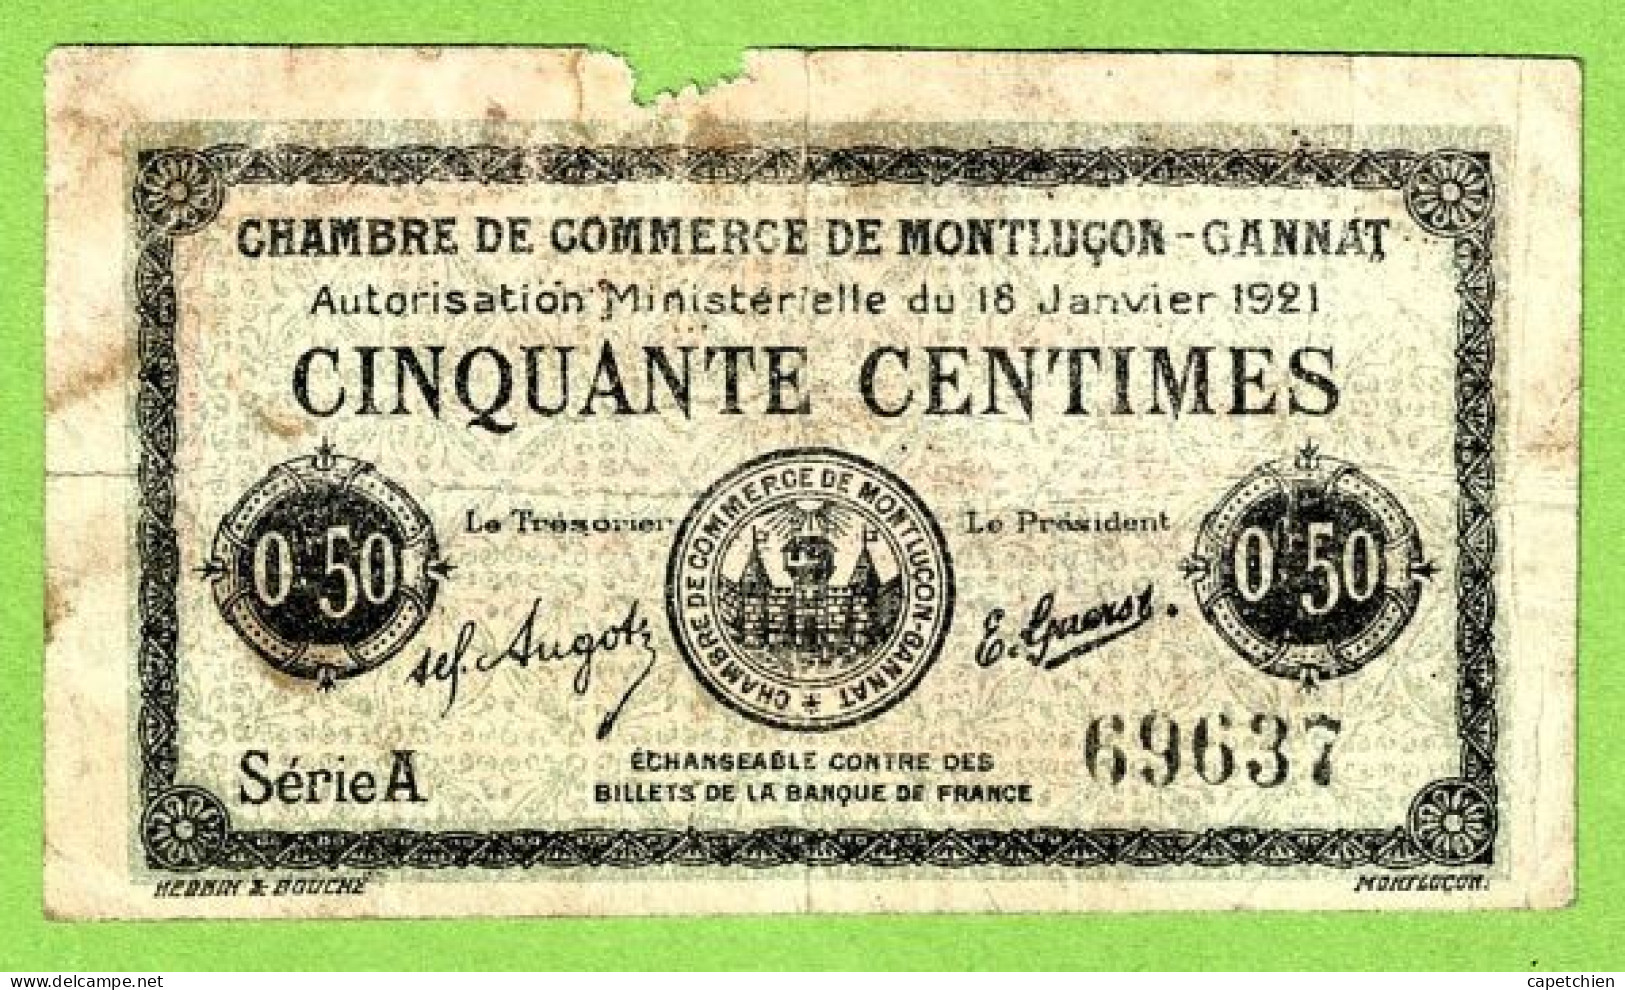 FRANCE / CHAMBRE De COMMERCE De MONTLUÇON - GANNAT /50 CENTIMES / 18 JANVIER 1921  N° 69637 / SERIE A - Handelskammer